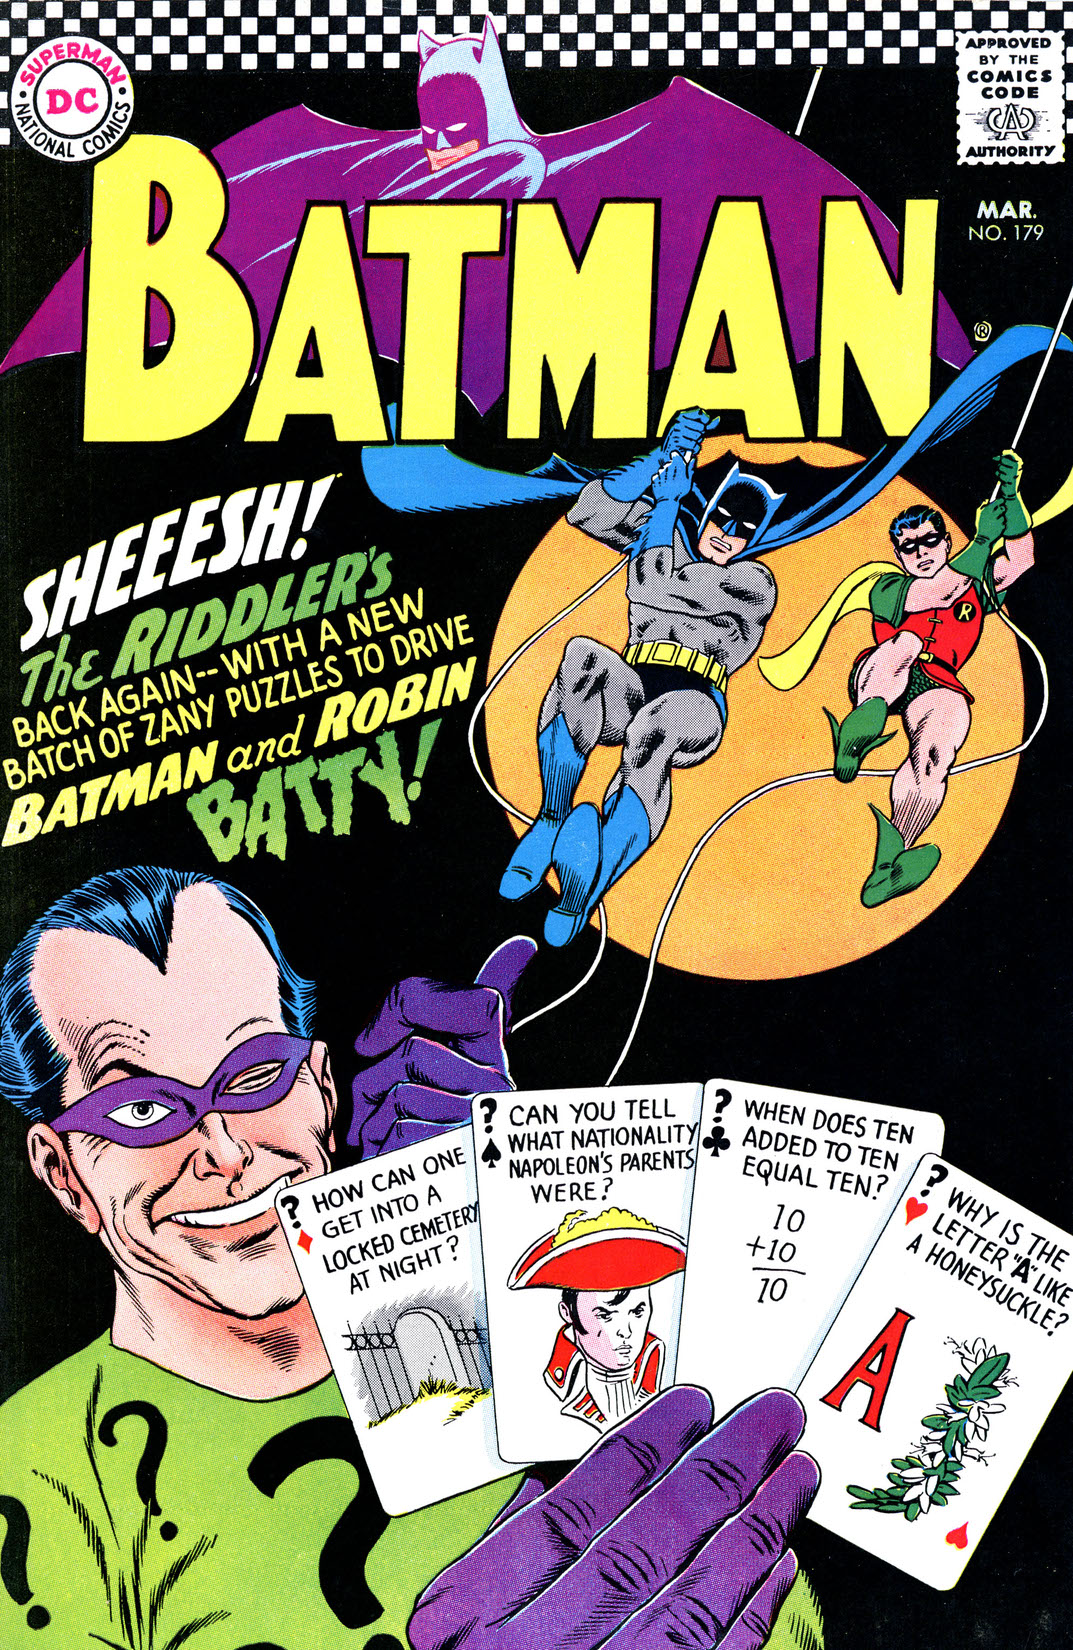 Batman (1940-) #179 preview images